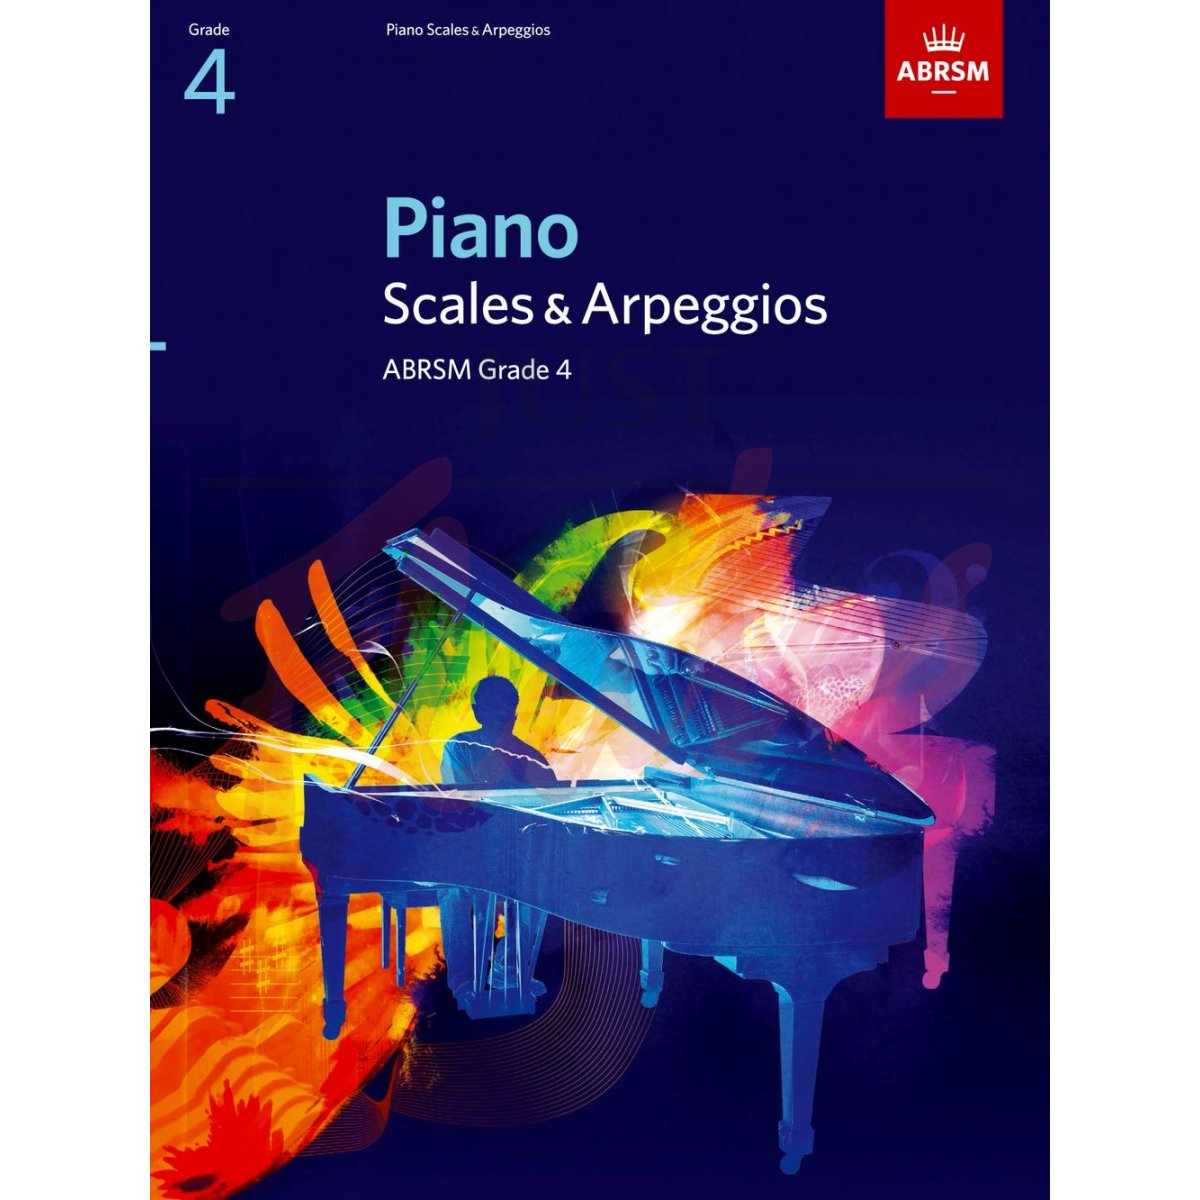 Piano Scales and Arpeggios Grade 4 (2009 to 2019)